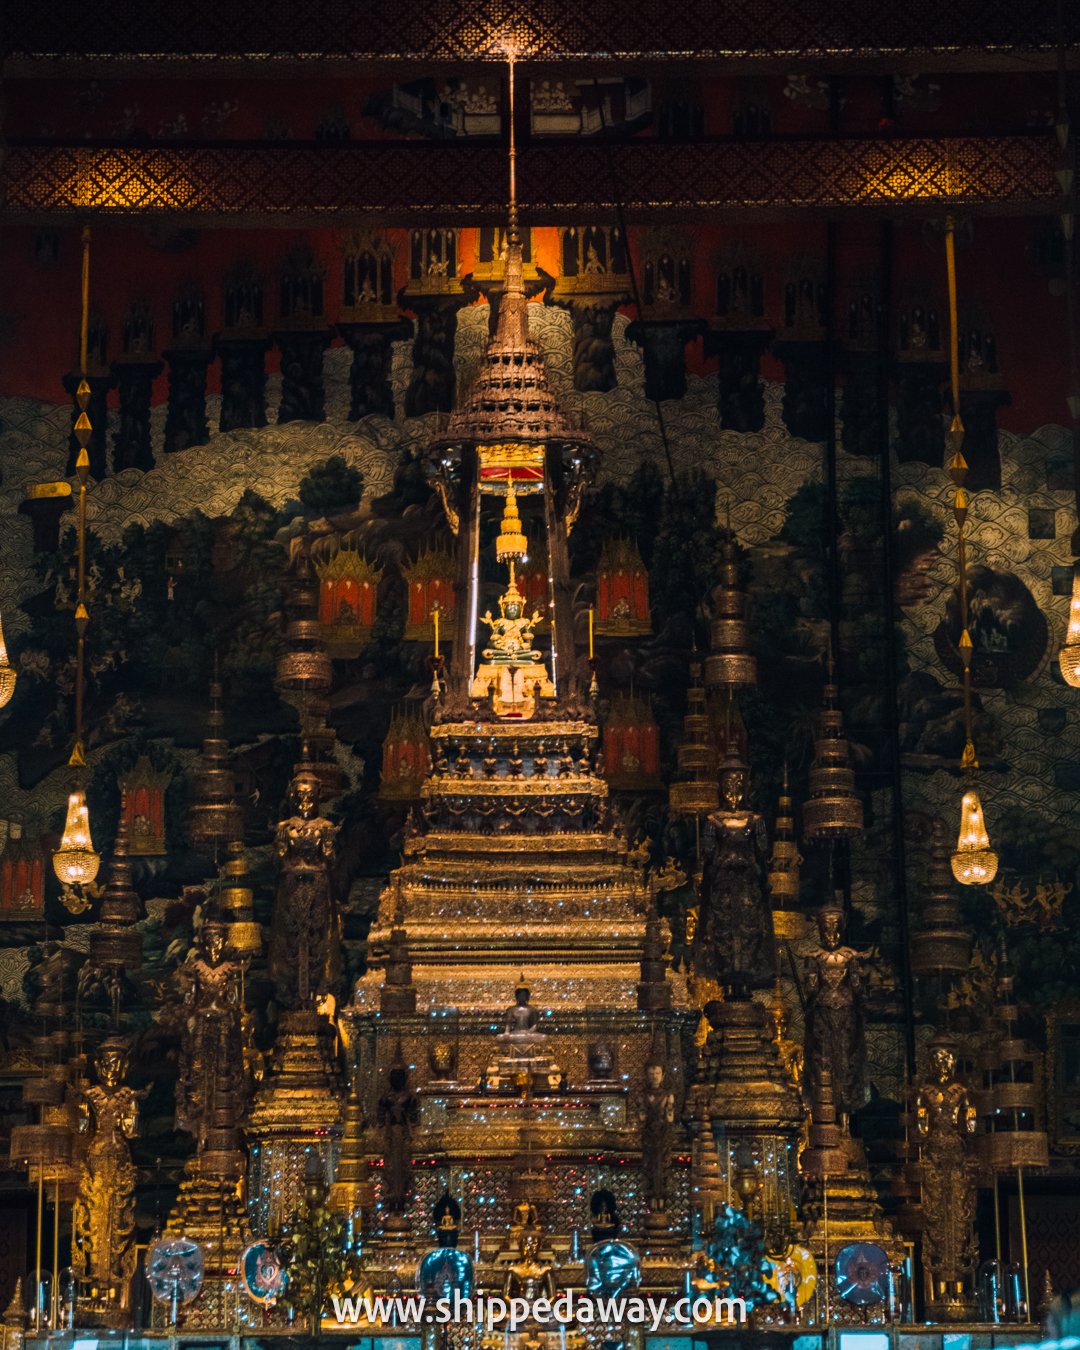 Emerald Buddha at The Grand Palace in Bangkok, Thailand